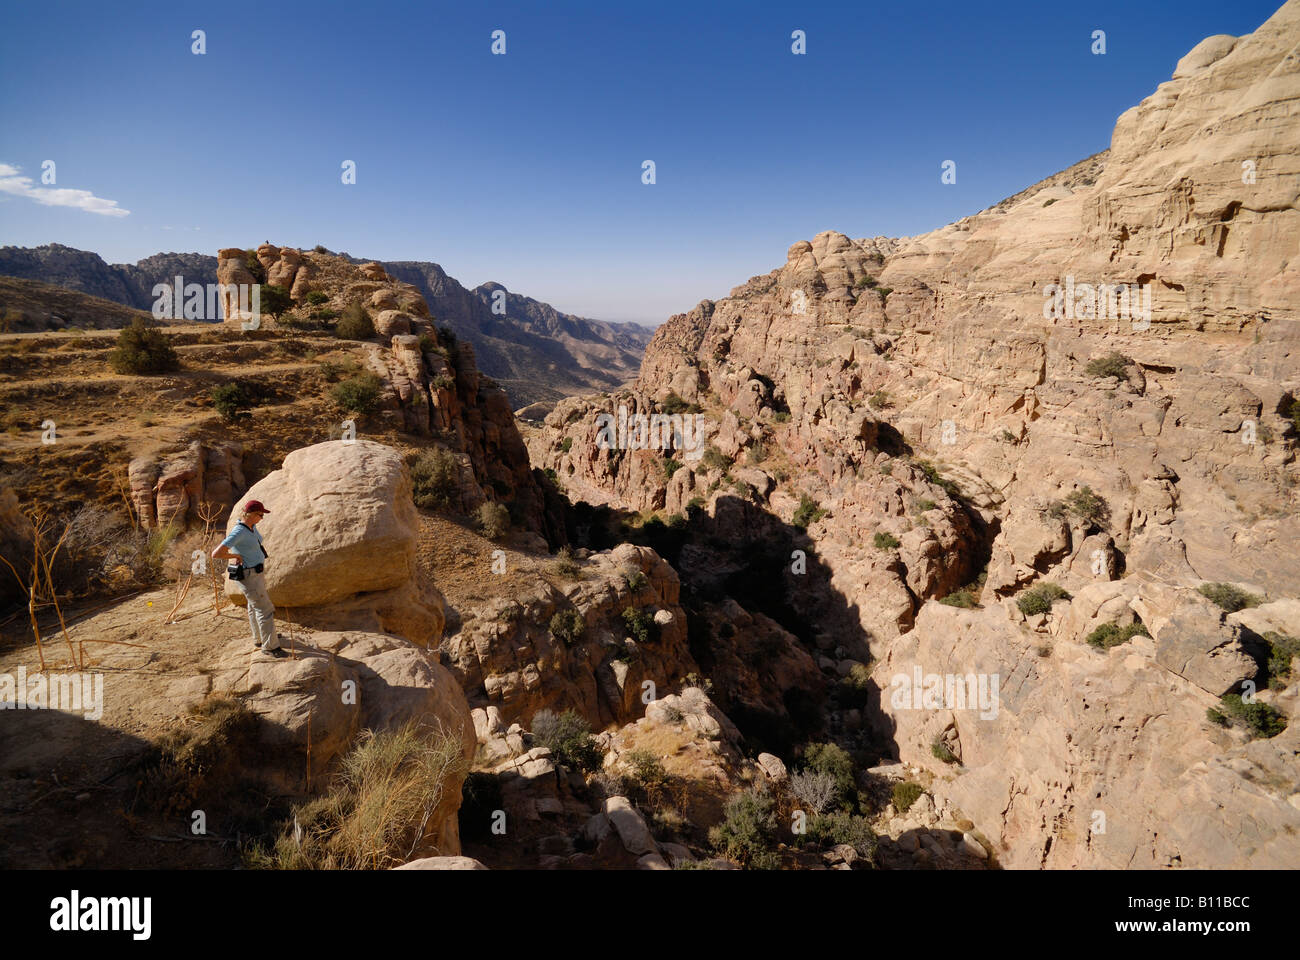 rocky landscape in Dana National Park Jordan Arabia Stock Photo